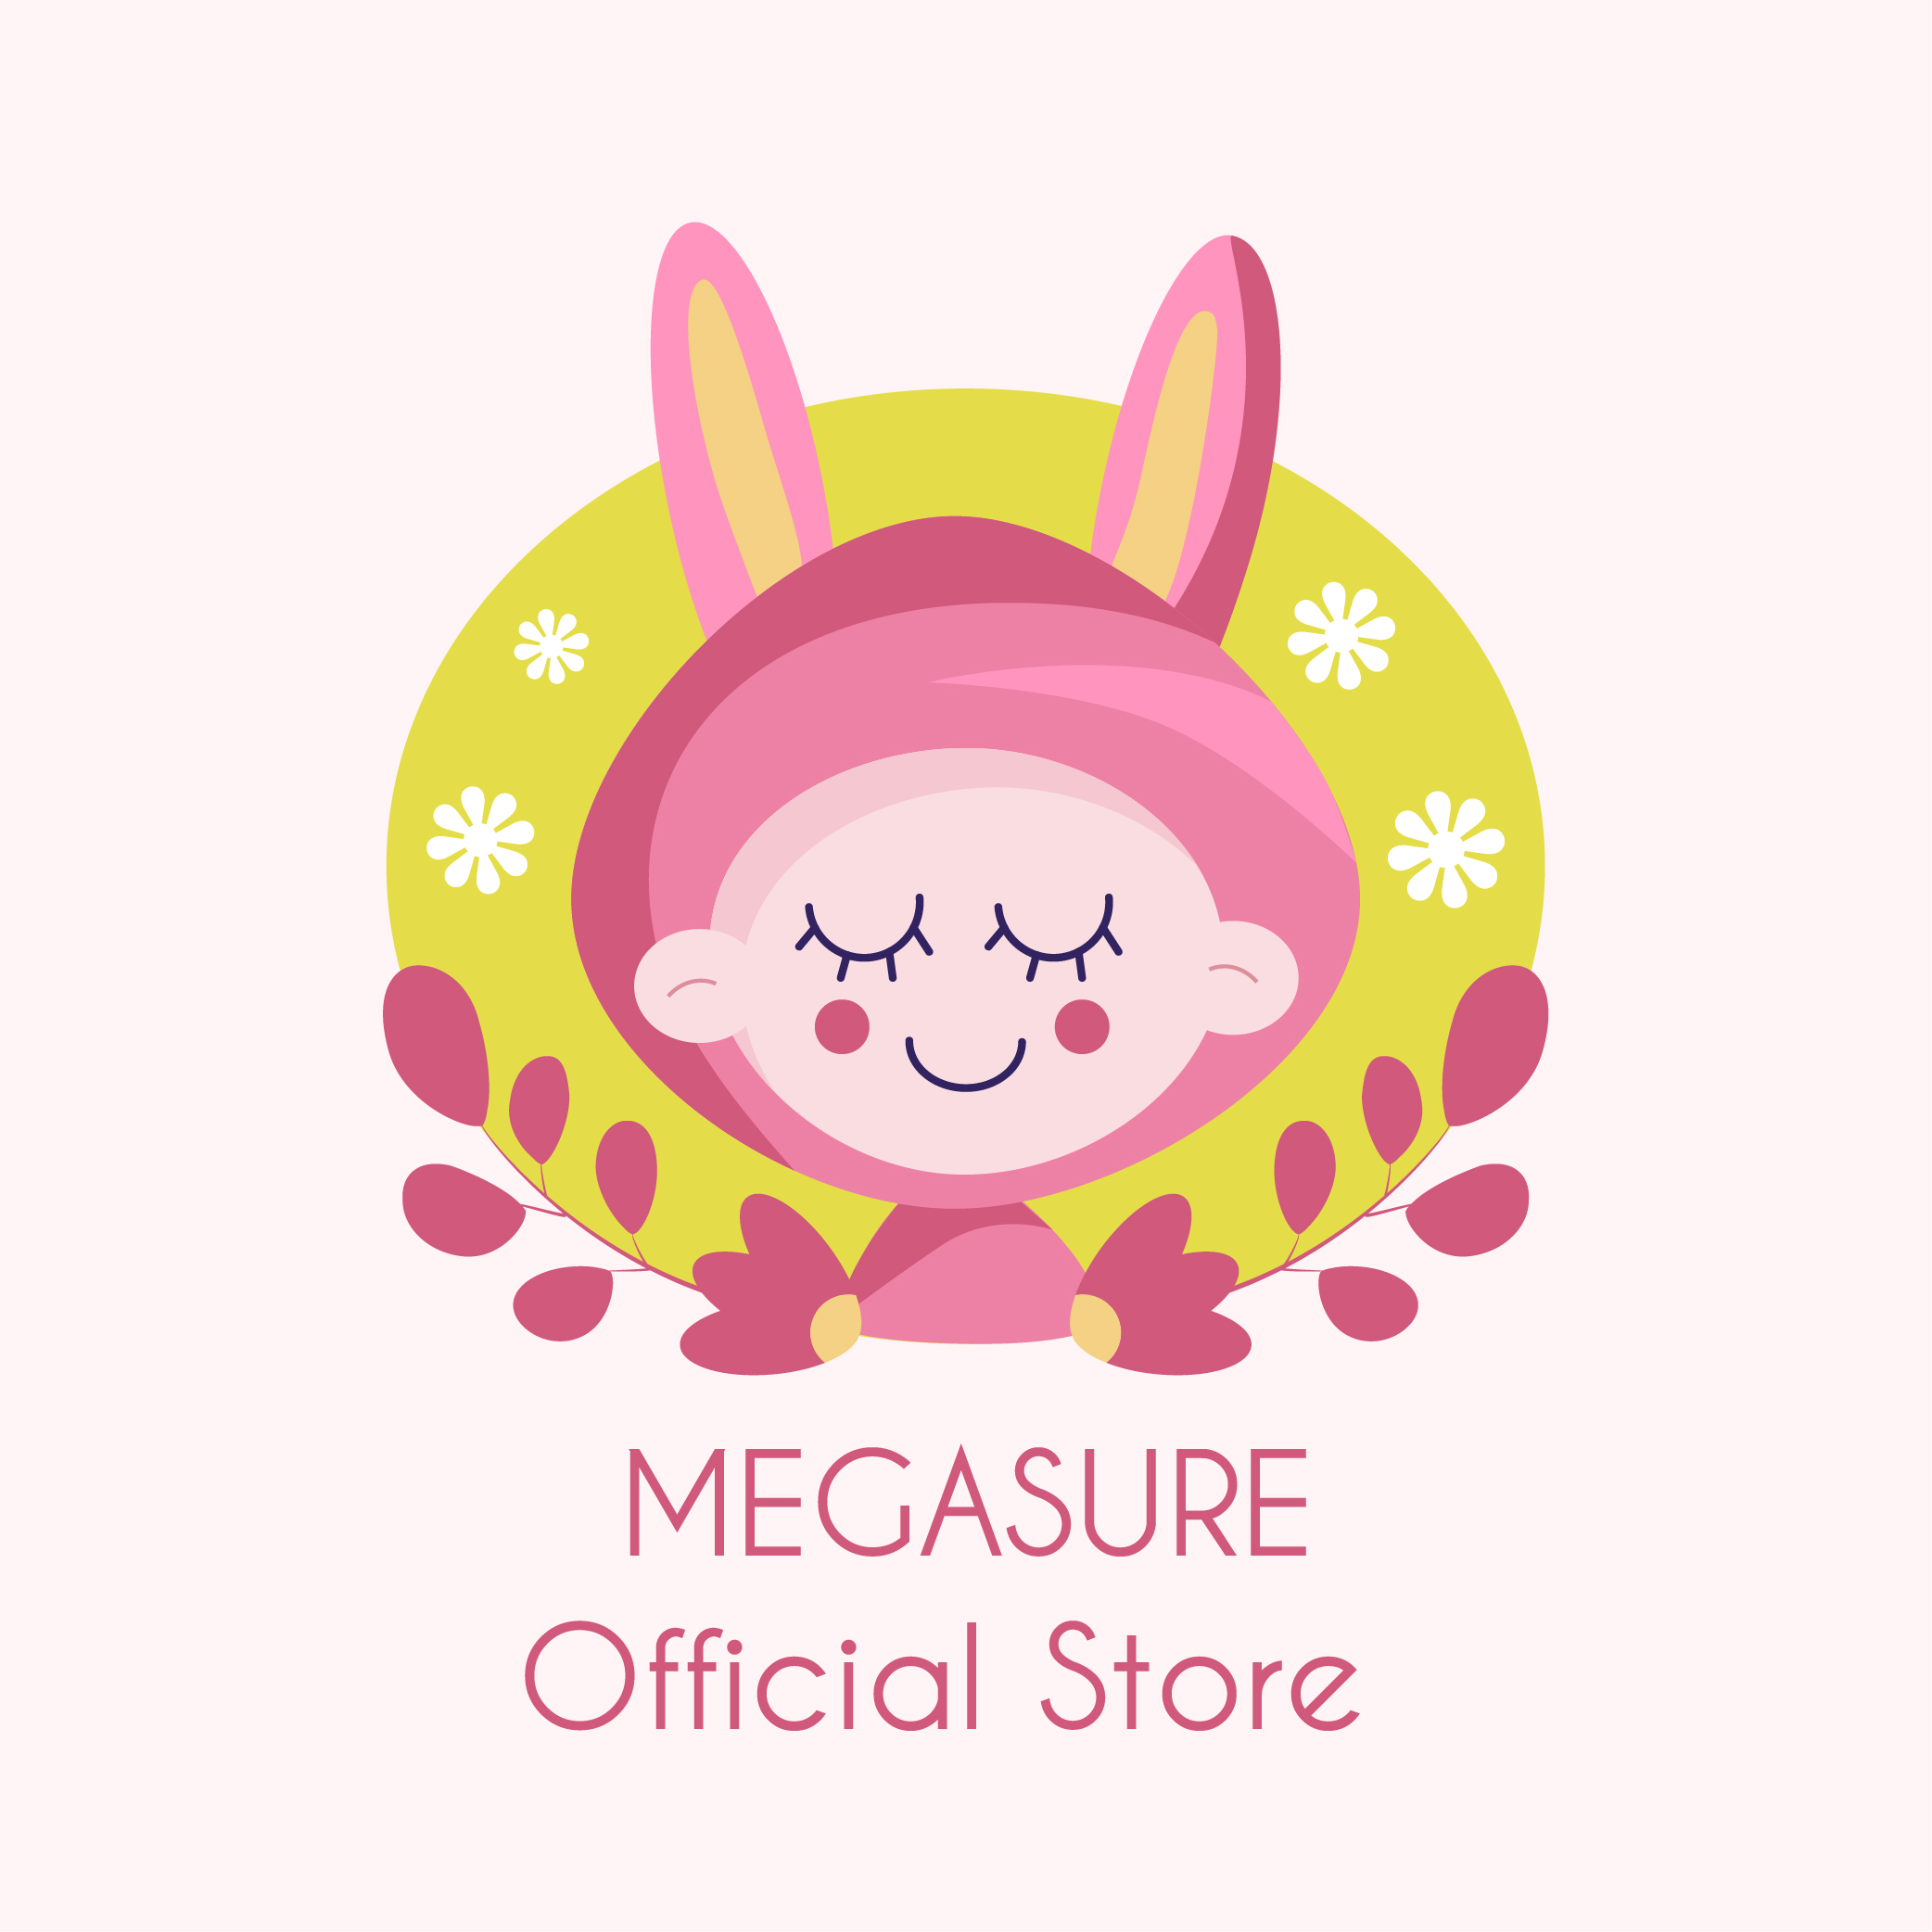 MEGASURE Official Store